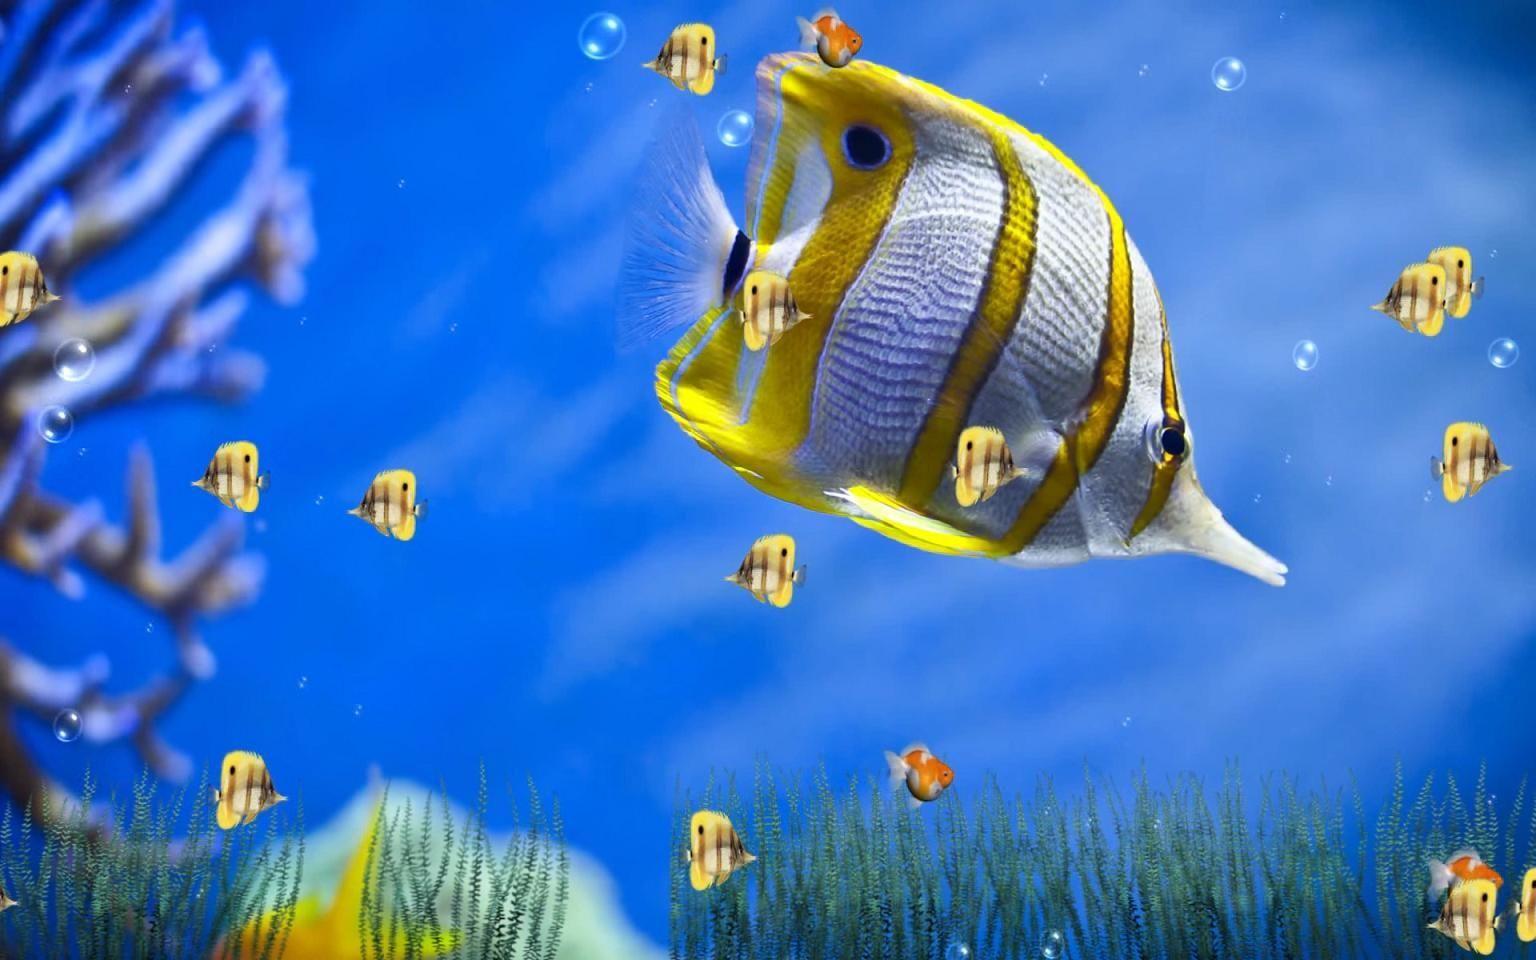 Moving aquarium wallpaper mac. Computer wallpaper desktop wallpaper, Animated wallpaper for pc, Live wallpaper for pc